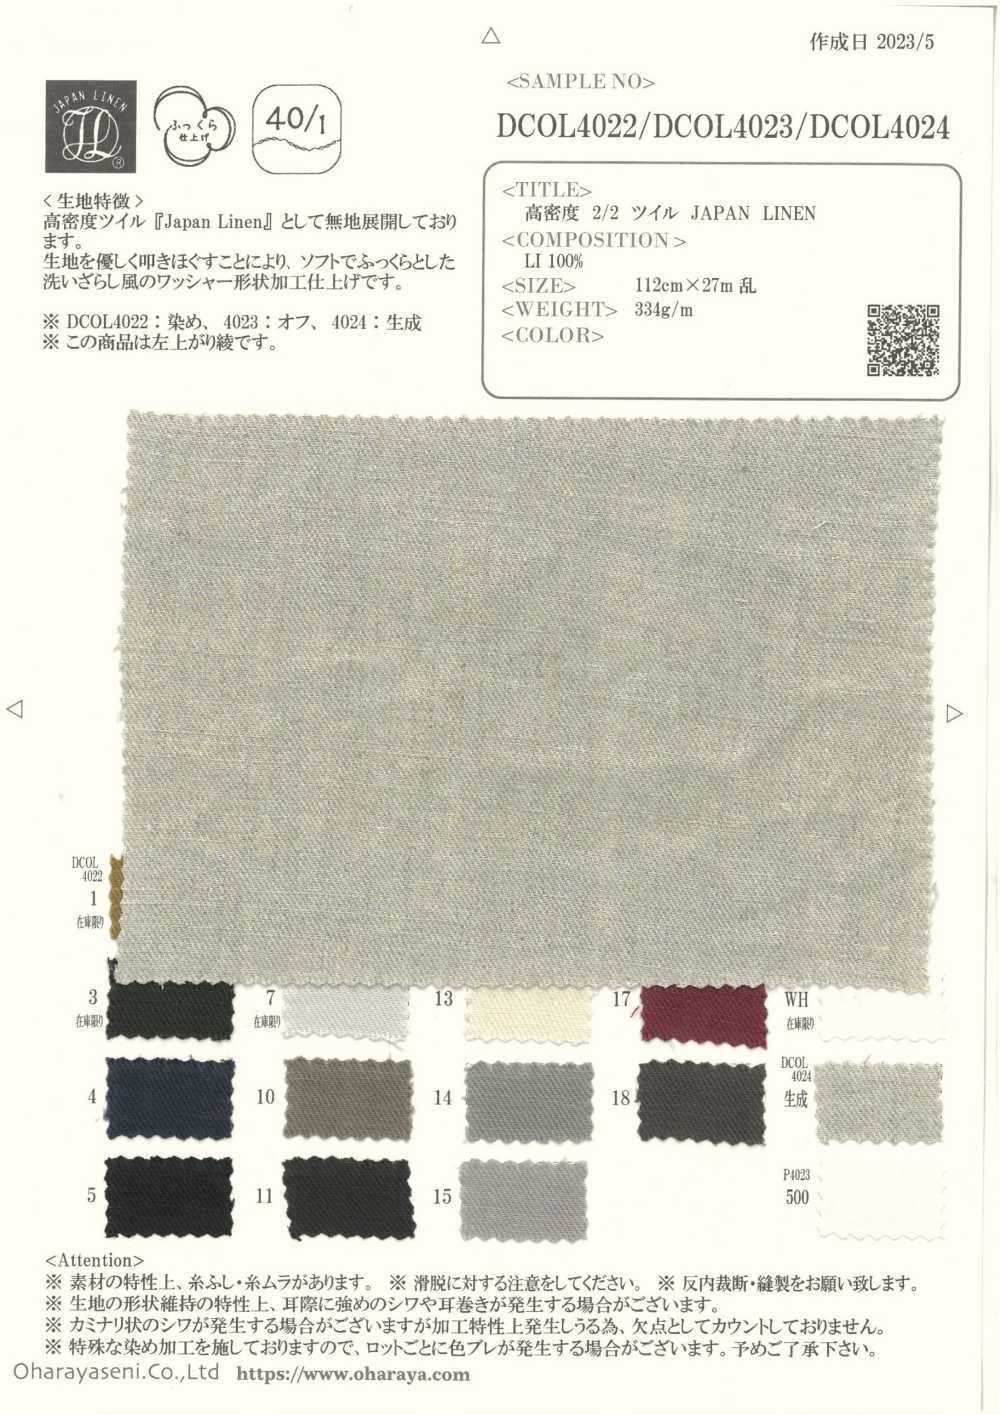 DCOL4023 LIN JAPON Sergé 2/2 Haute Densité[Fabrication De Textile] Oharayaseni